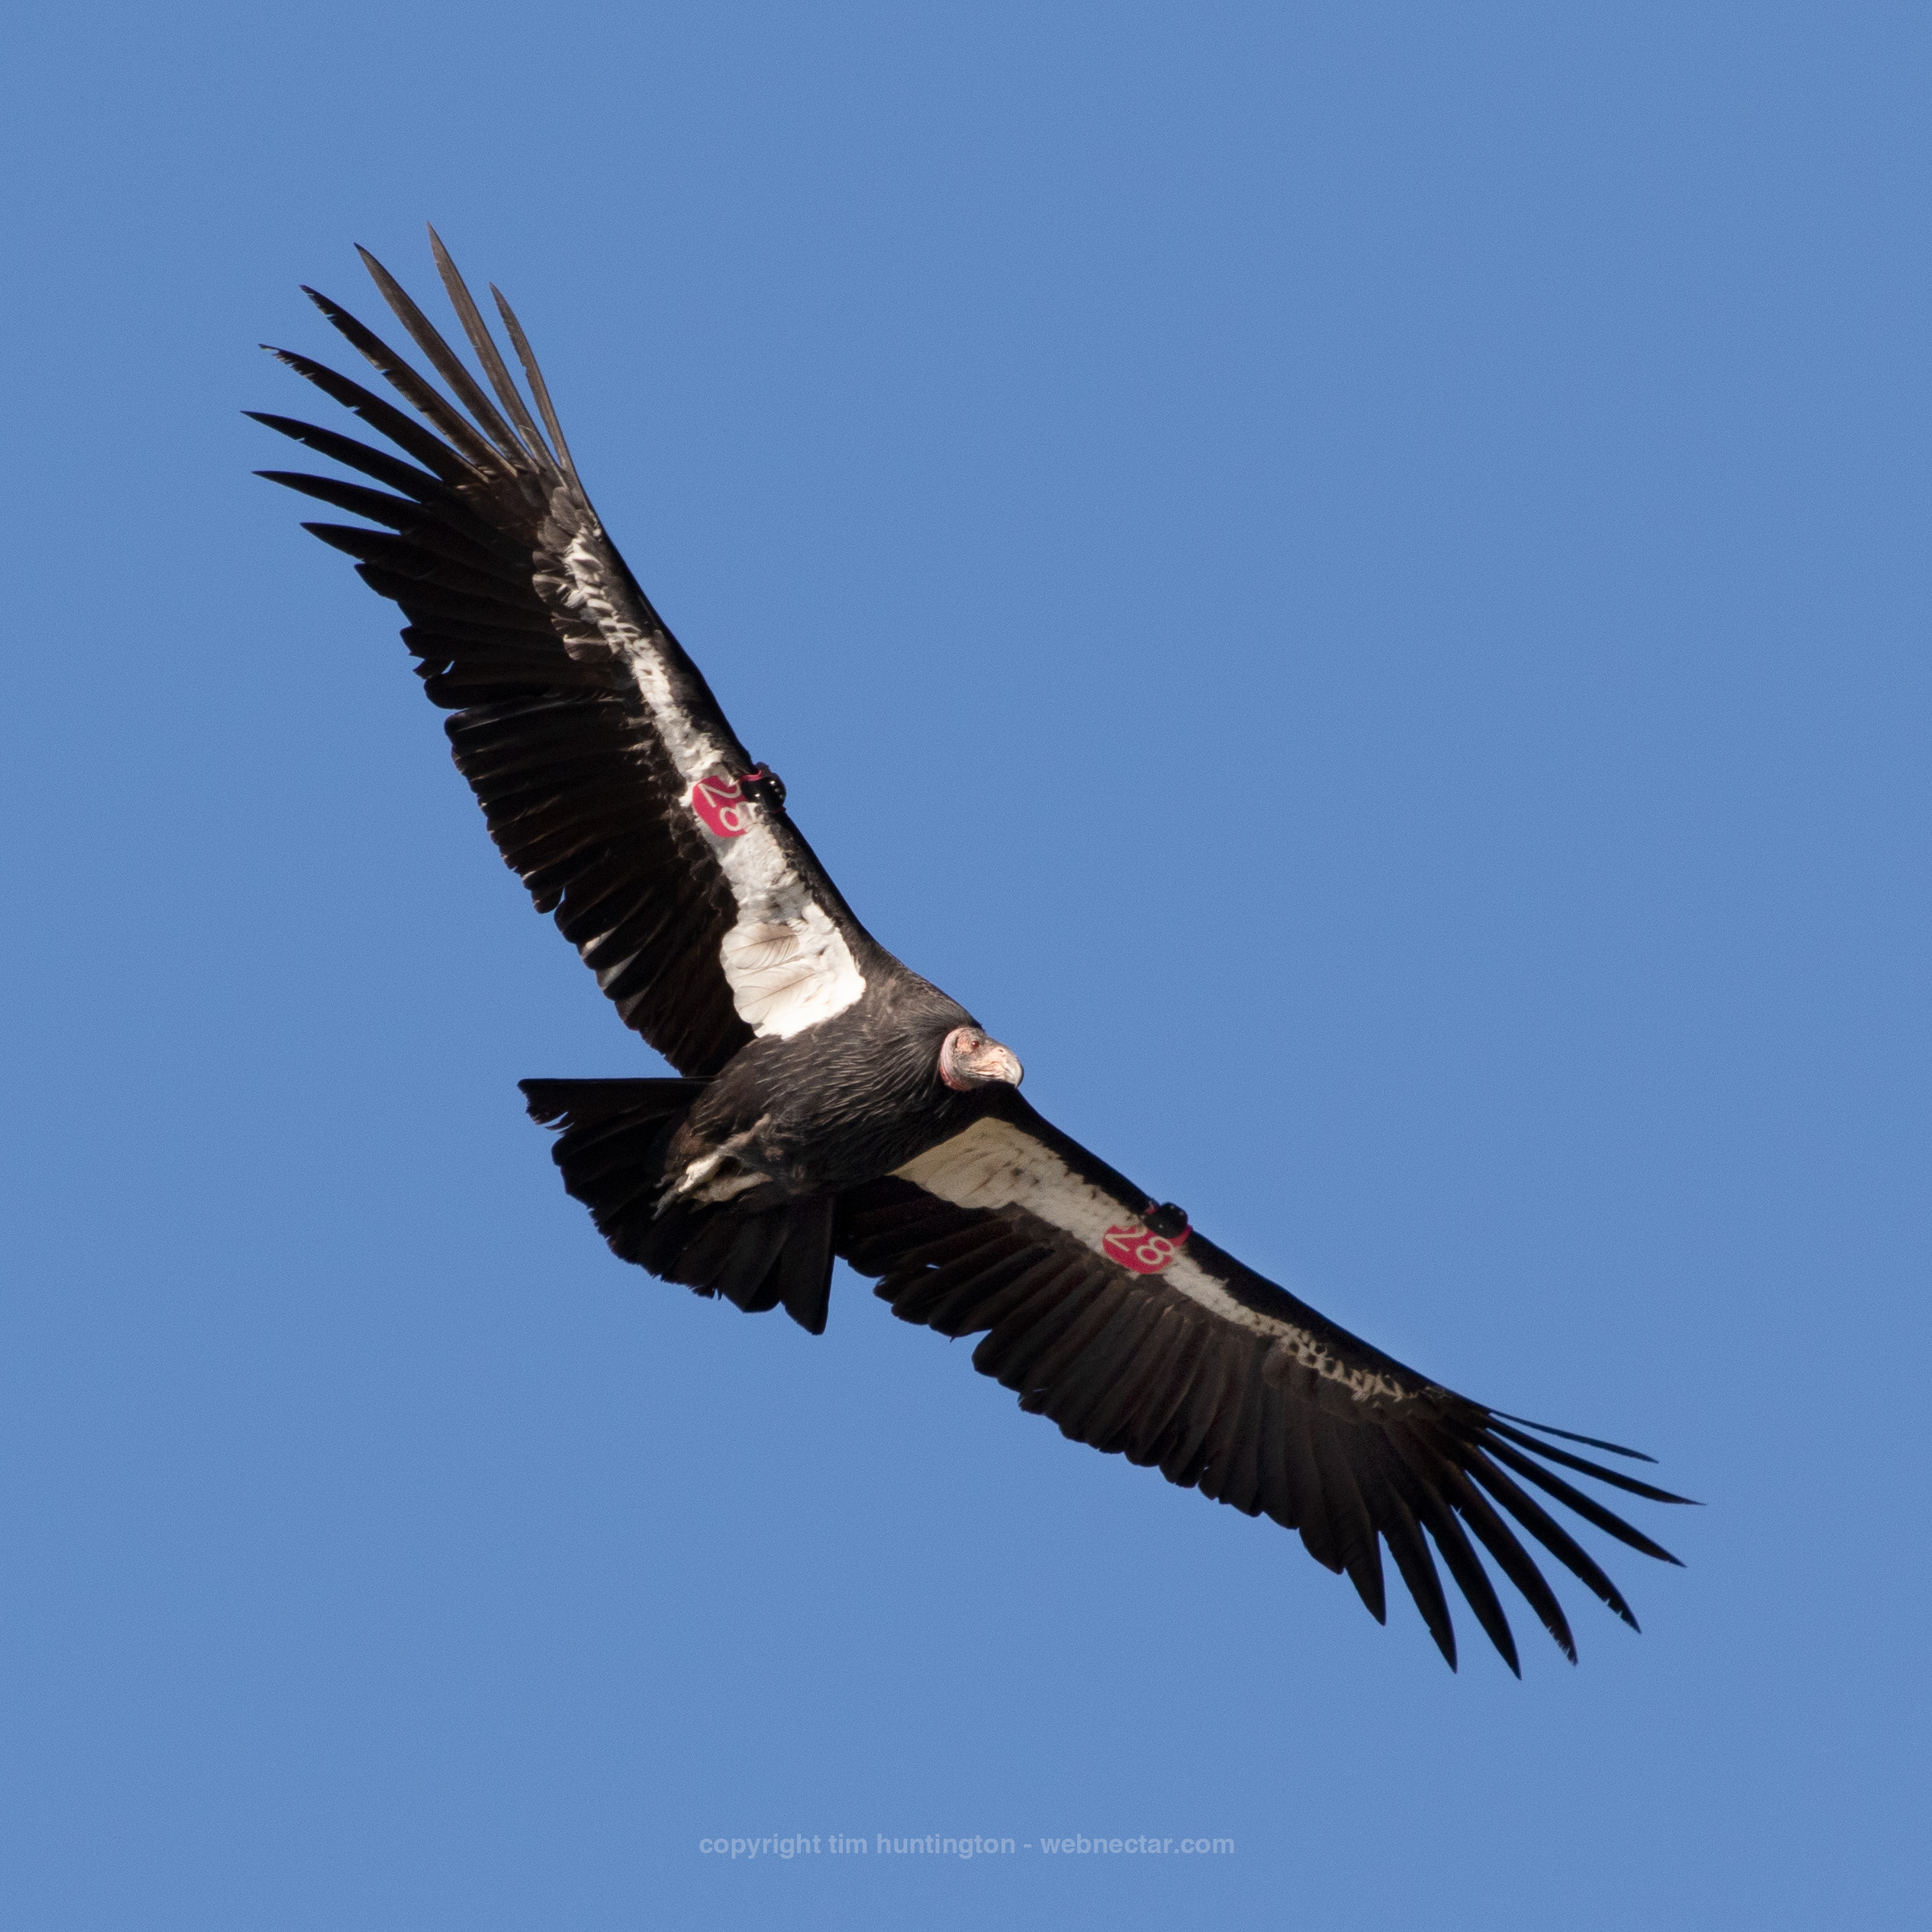 Condor 828 soaring